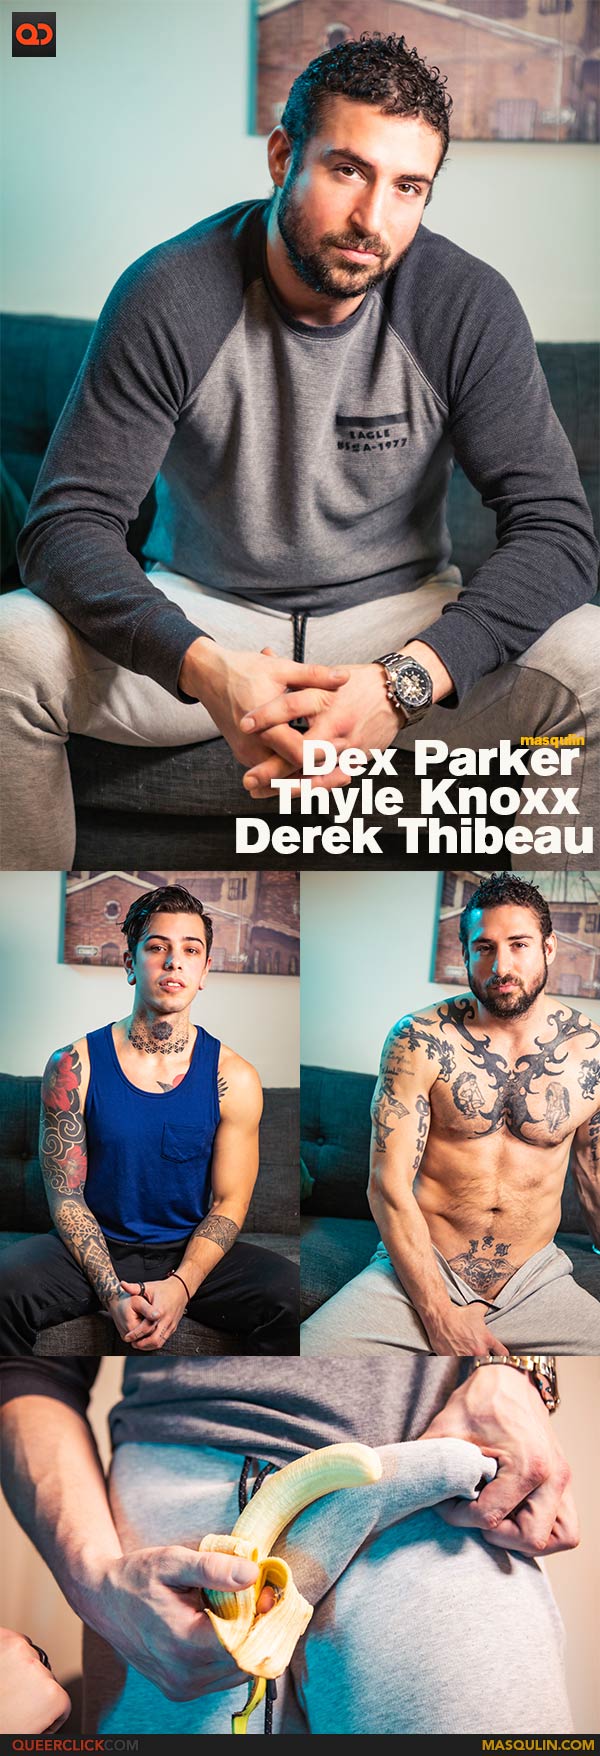 Masqulin: Dex Parker, Thyle Knoxx and Derek Thibeau